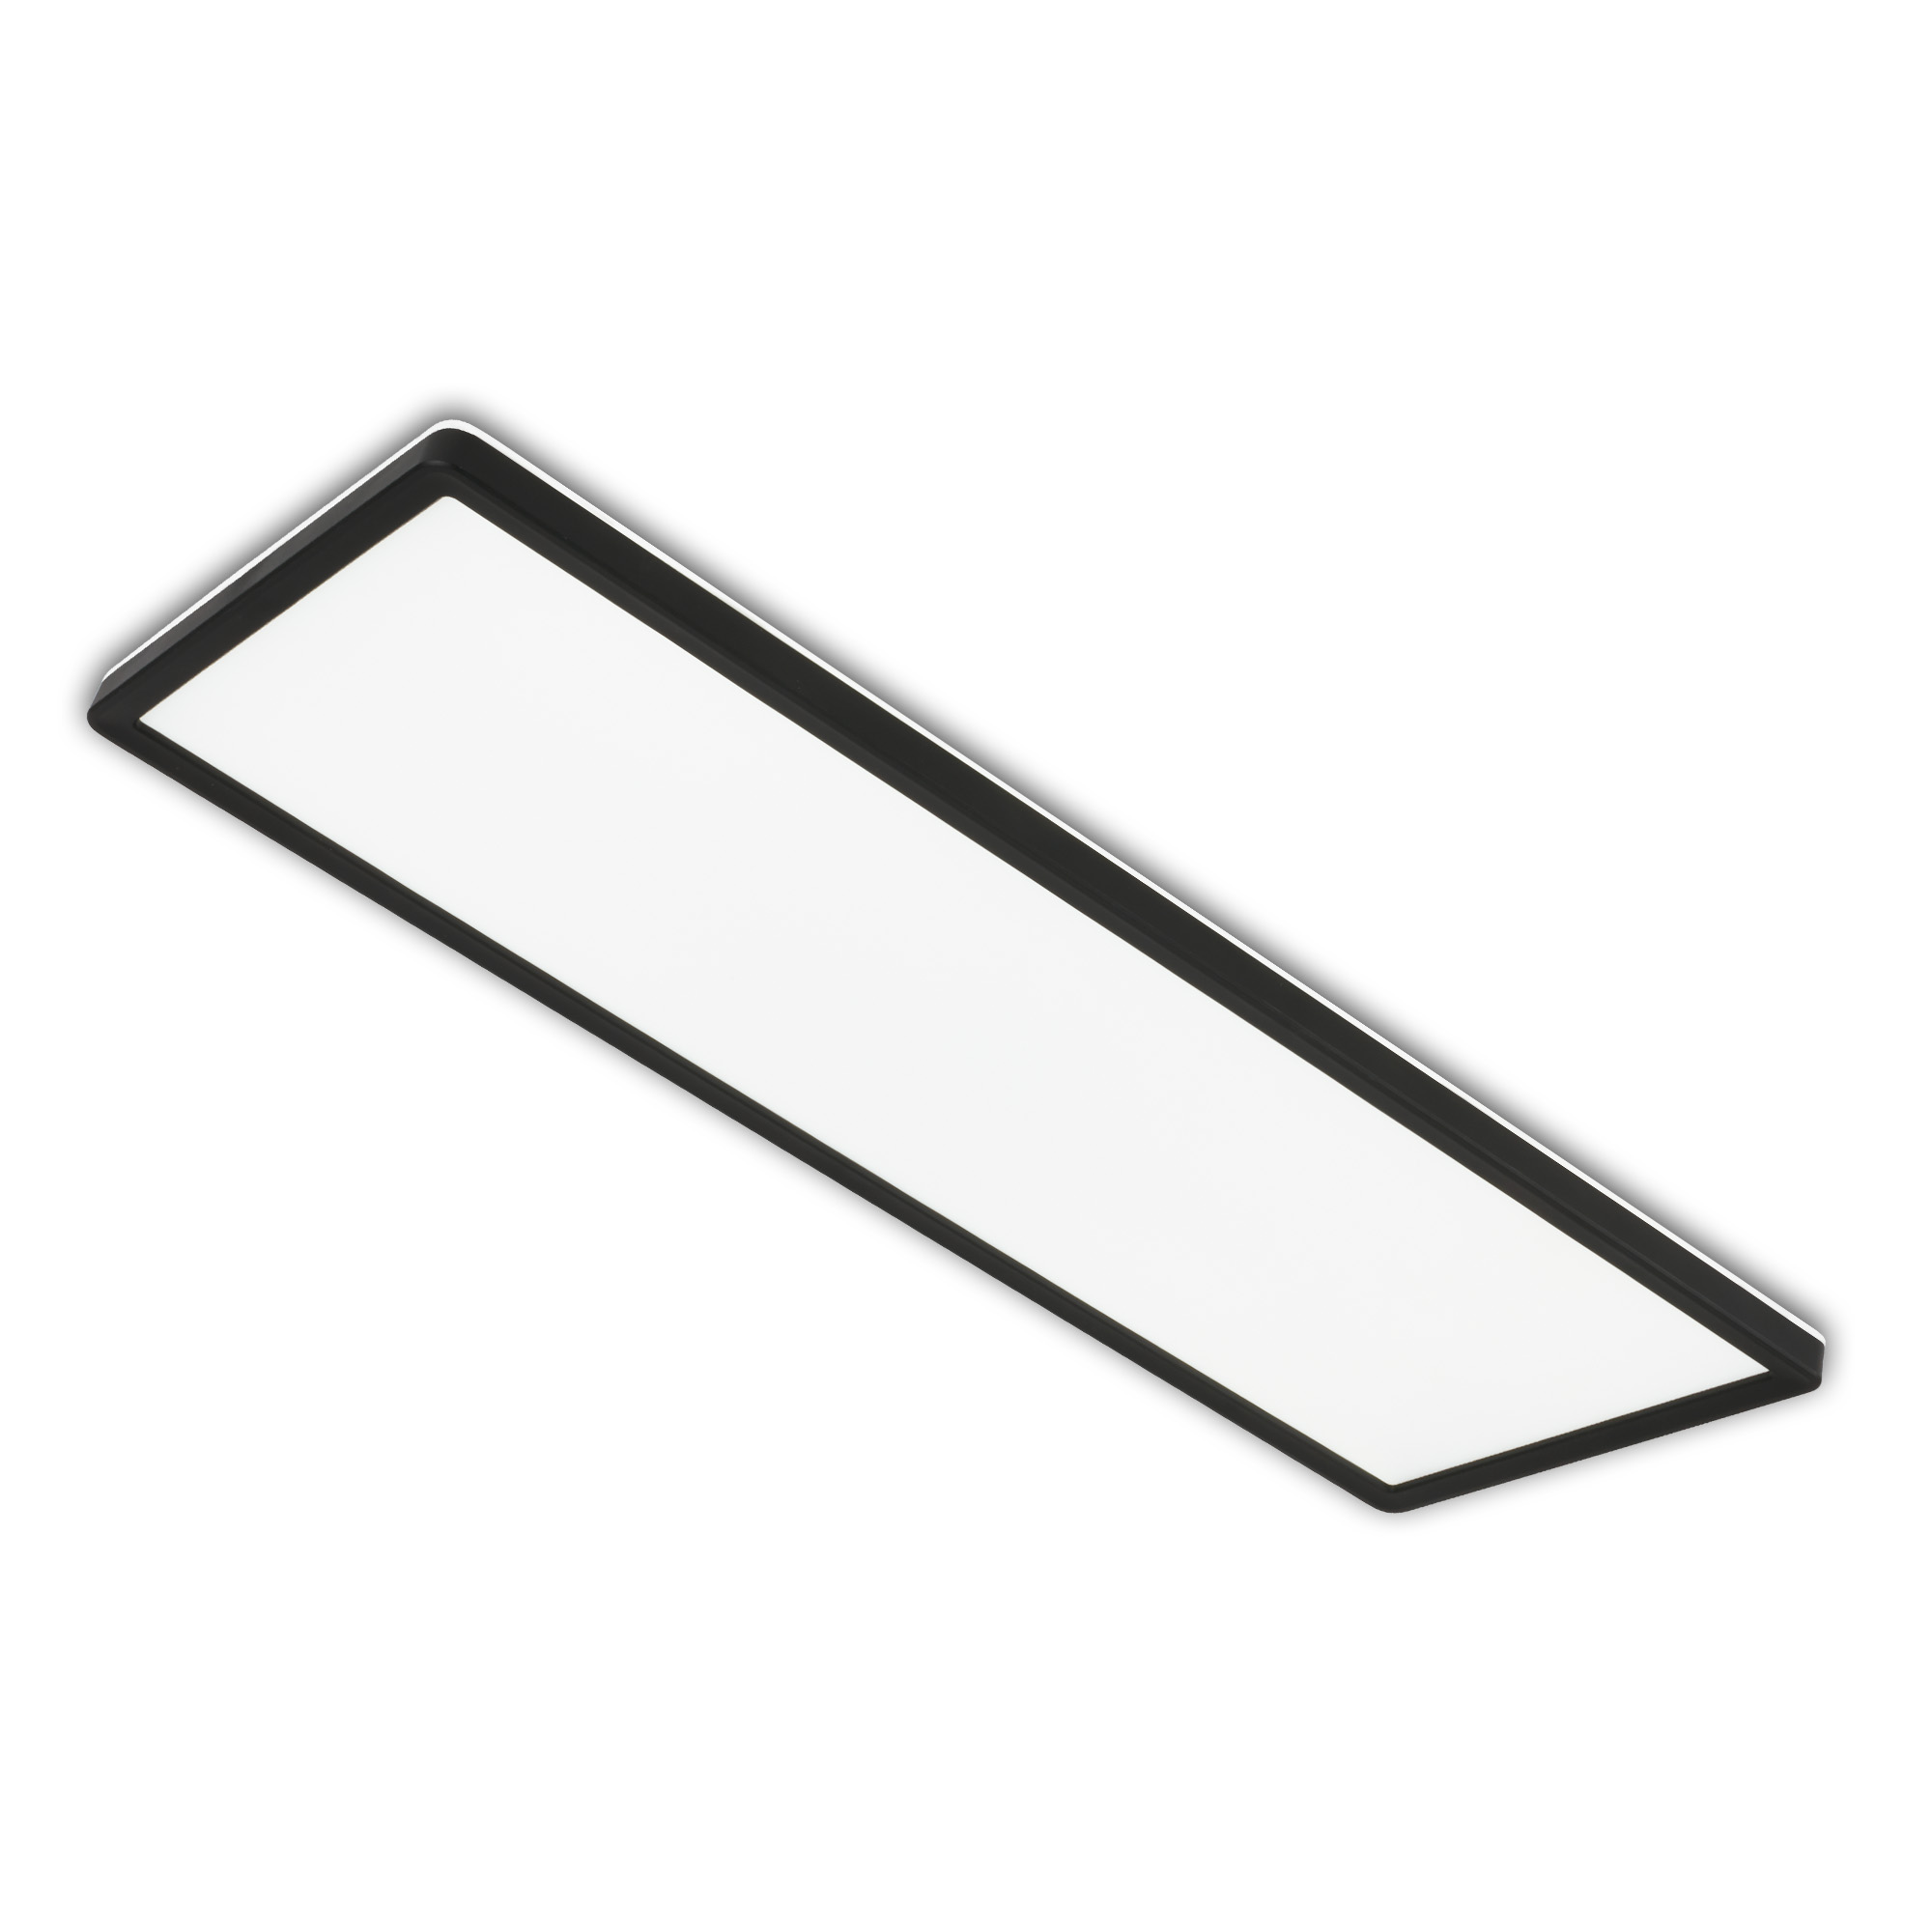 Ultraflaches LED Panel mit LED Backlight, 29,3 cm, 1x LED, 22 W, 3000 lm, schwarz